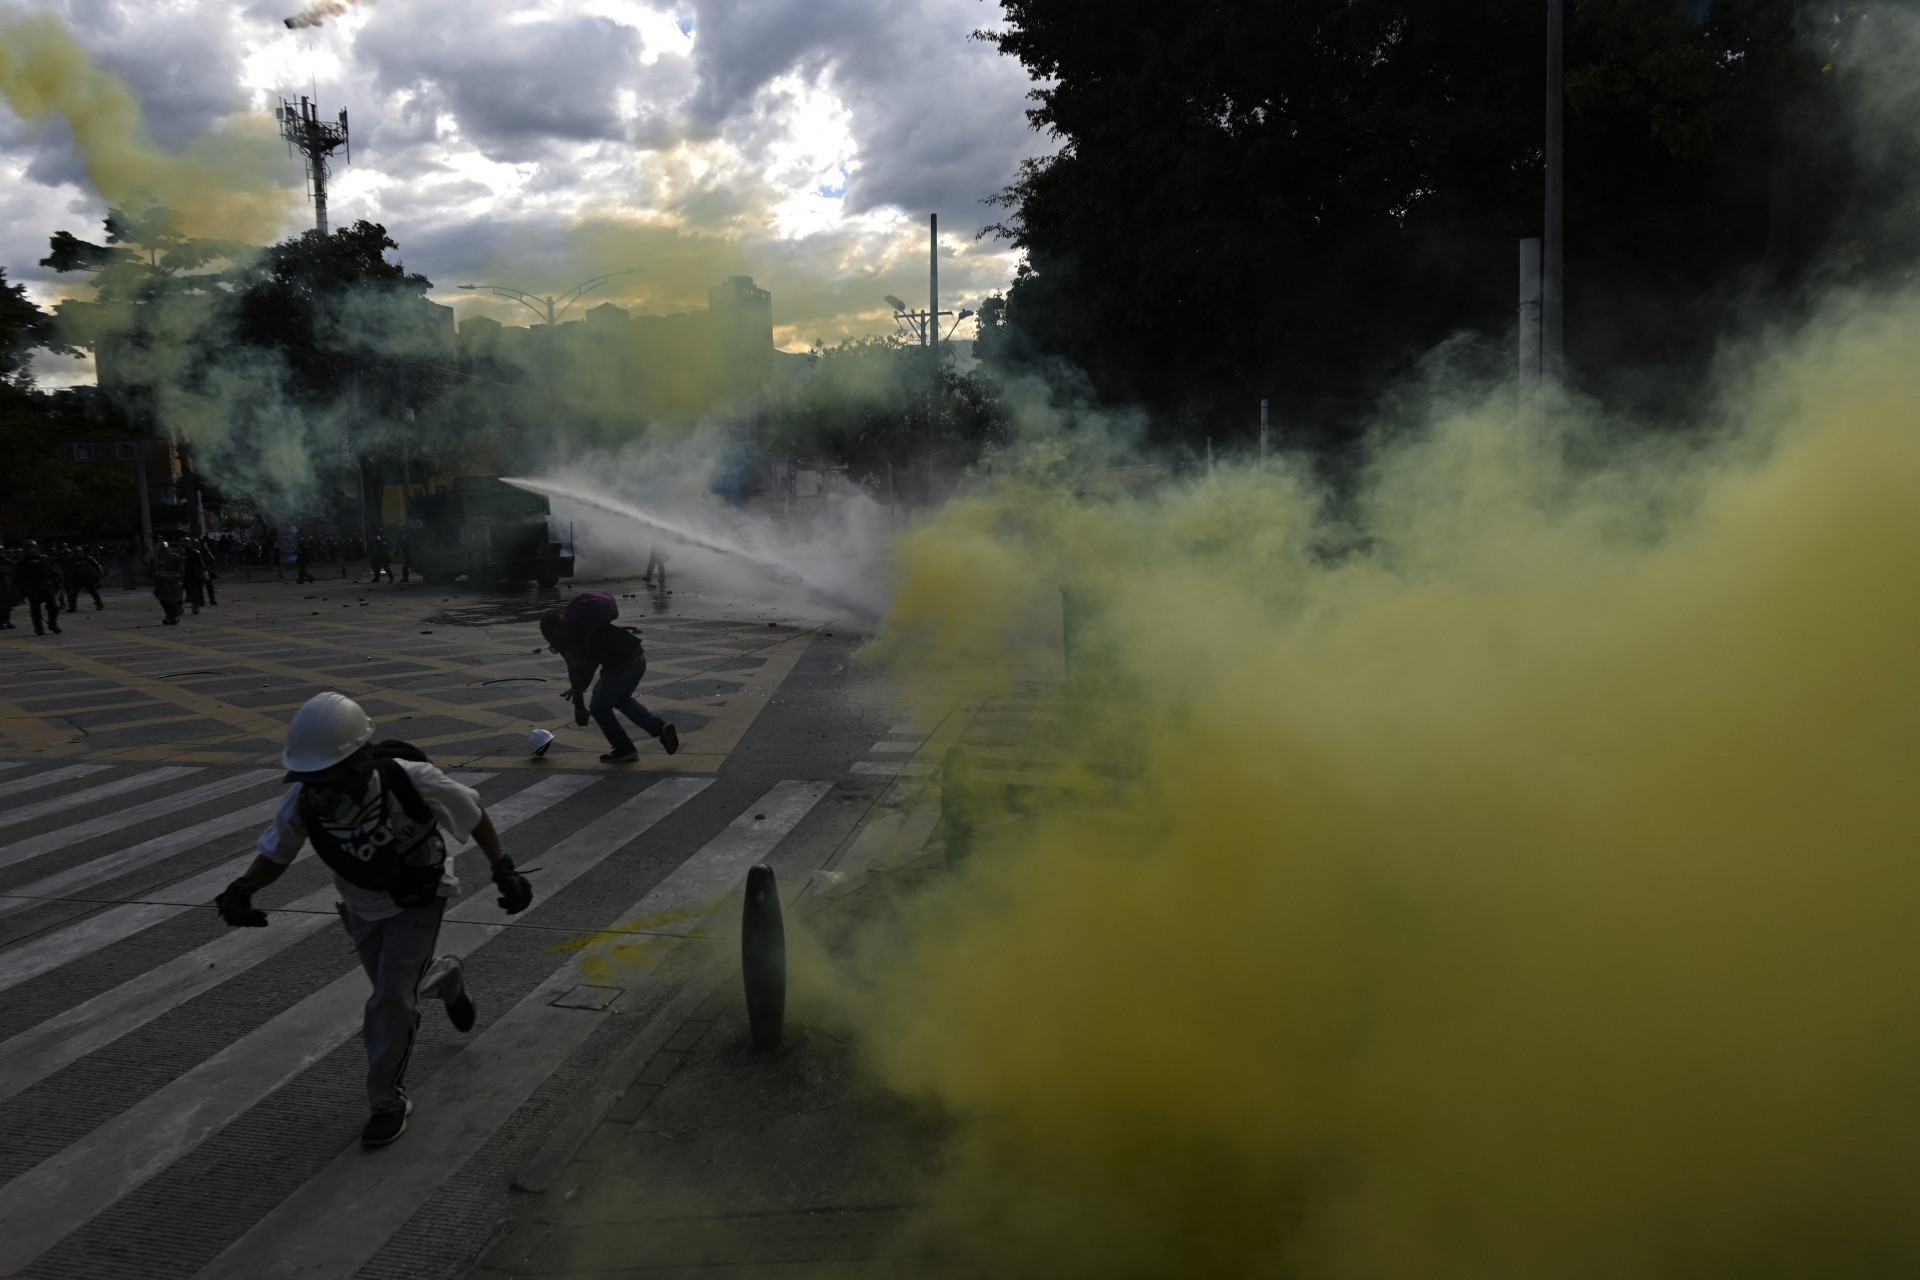 Manifestantes enfrentam tropas de choque durante um protesto contra o governo do presidente colombiano Ivan Duque em Medellín, Colômbia, em 20 de julho de 2021, em meio às comemorações do Dia da Independência no país. (Foto de JOAQUIN SARMIENTO / AFP)(Foto: JOAQUIN SARMIENTO / AFP)